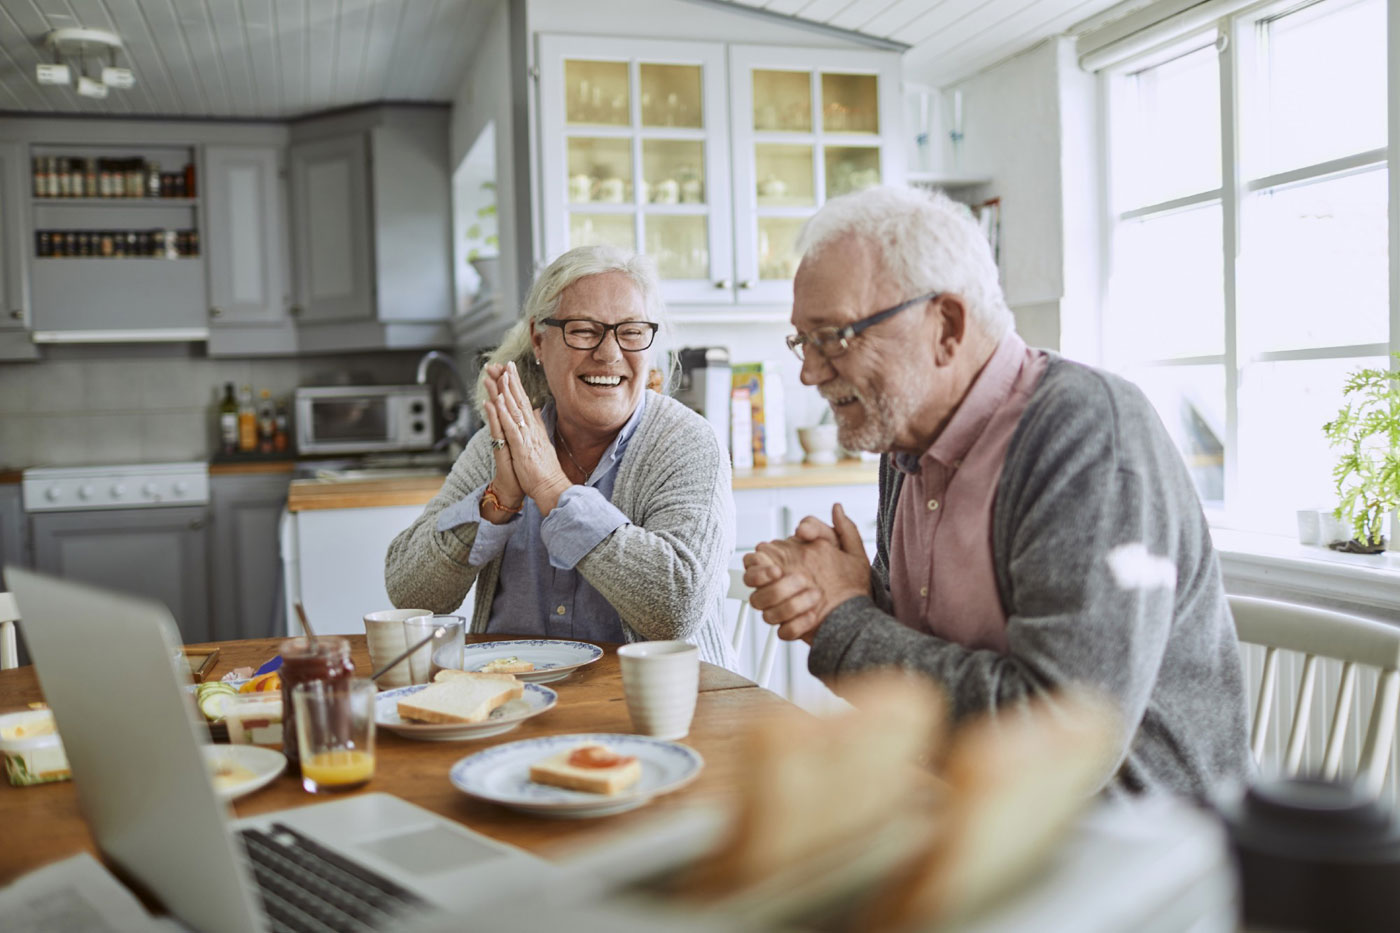 Un joyeux couple de seniors partageant un moment ludique autour du petit-déjeuner dans une cuisine lumineuse et cosy, conçue avec un agencement pensé pour la mobilité.